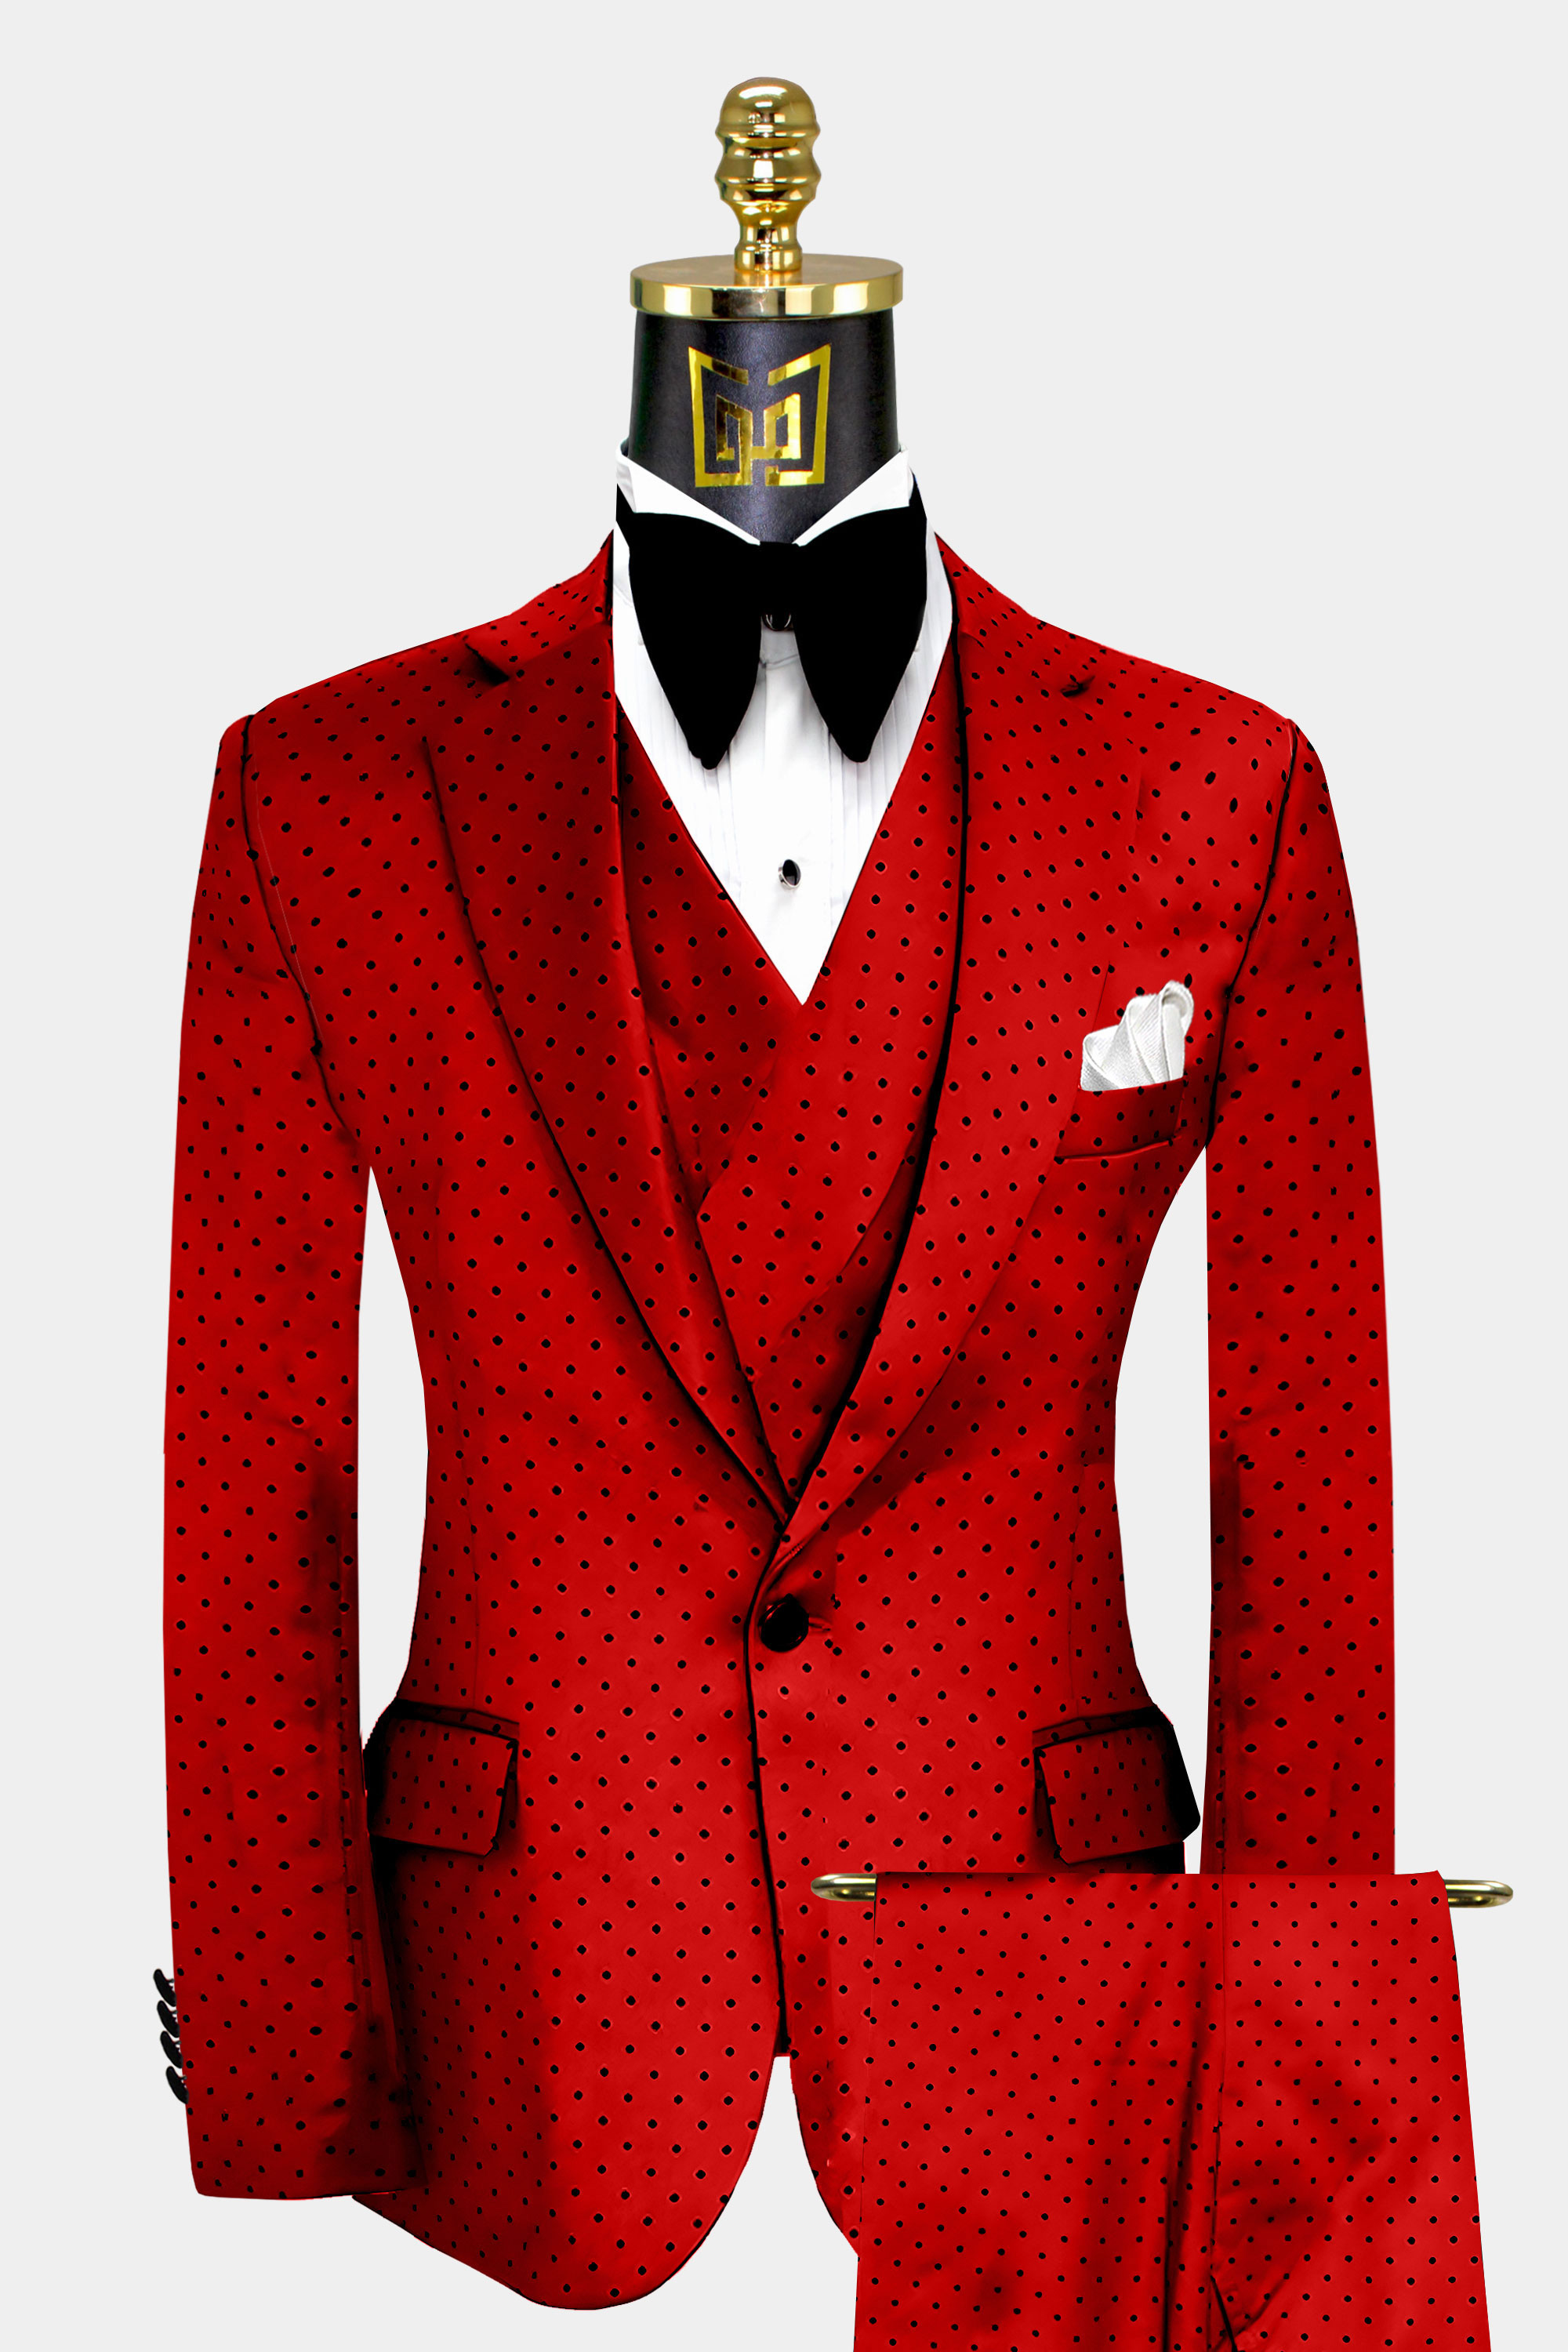 Mens-Red-Polka-Dot-Suit-Groom-Wedding-Prom-Tuxedo-from-Gentlemansguru.com